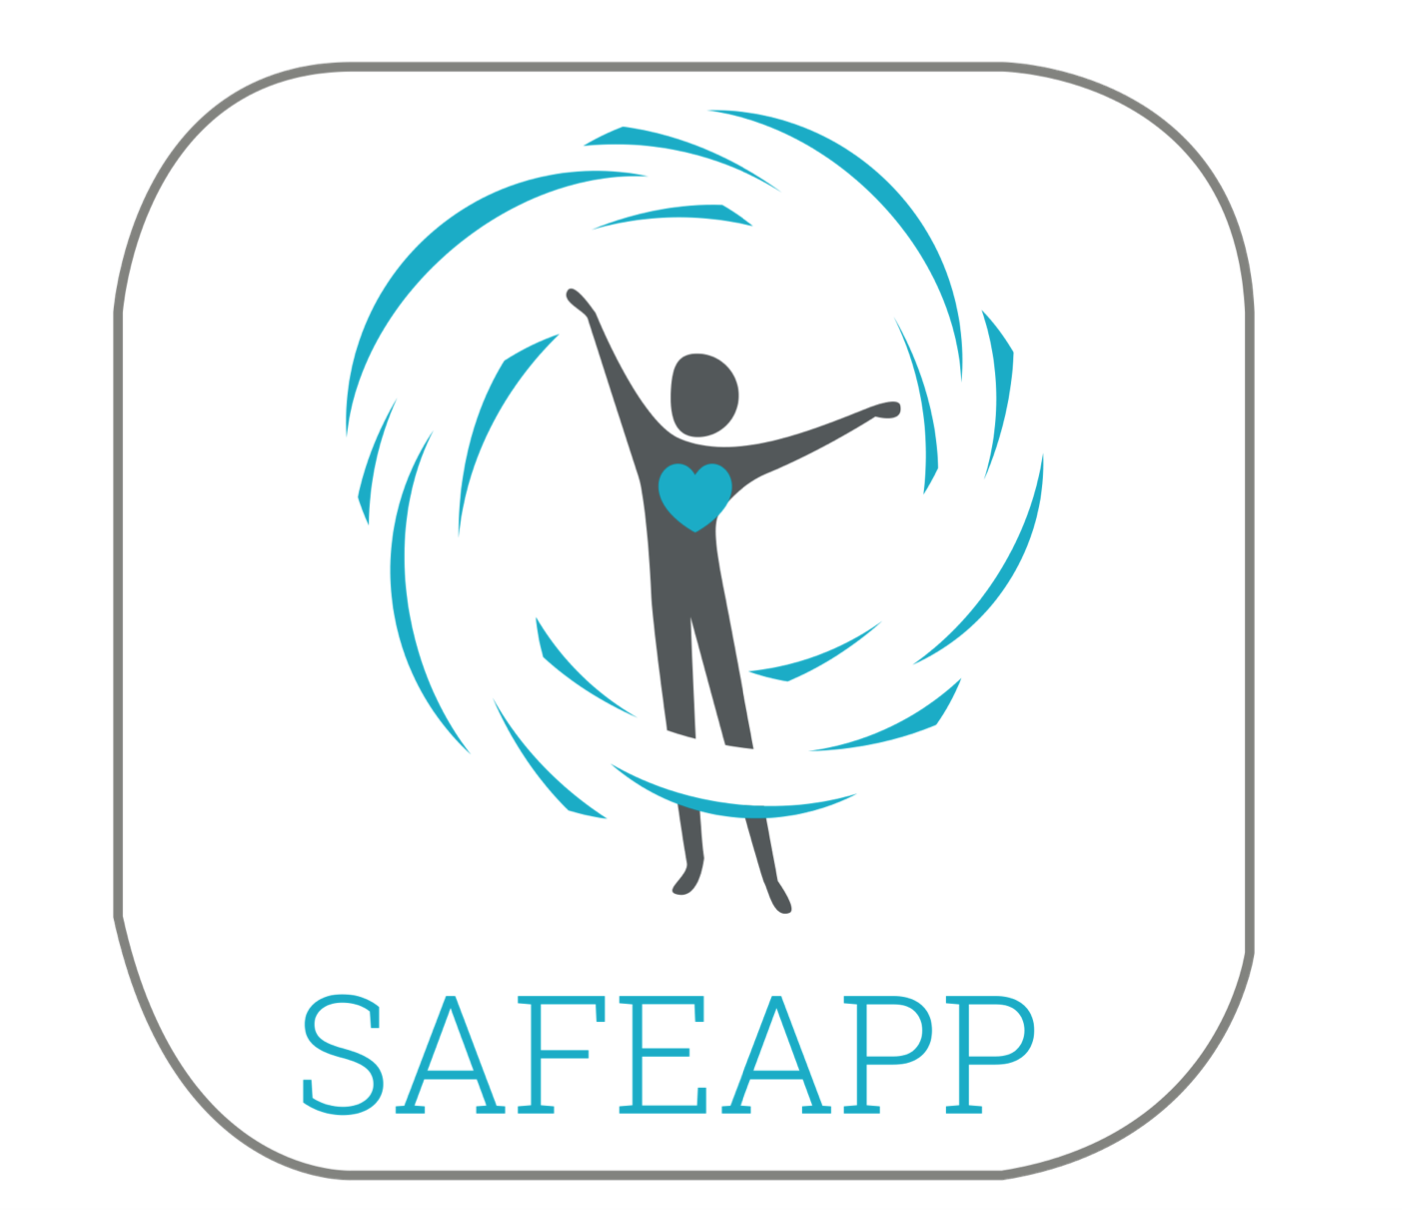 SAFEAPP™ UPDATES